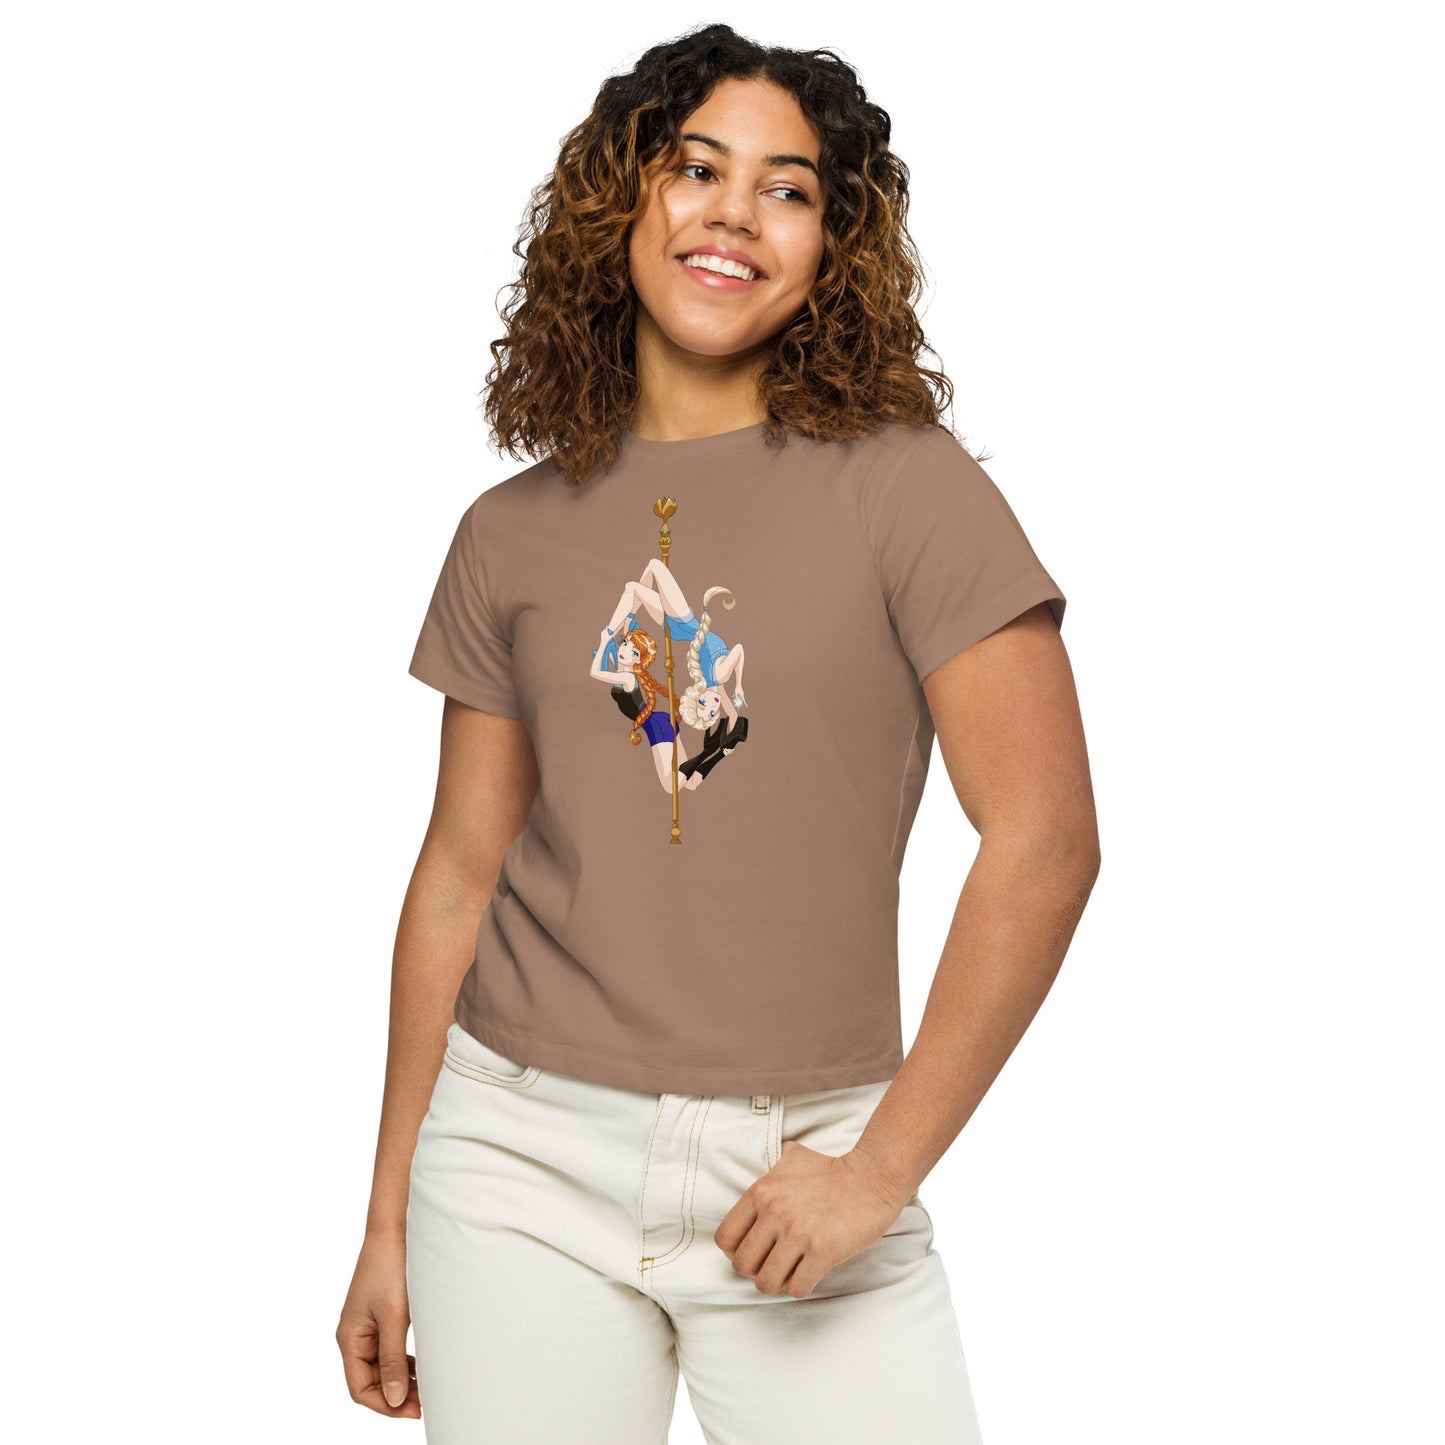 Doubles Princess - Women’s high-waisted t-shirt